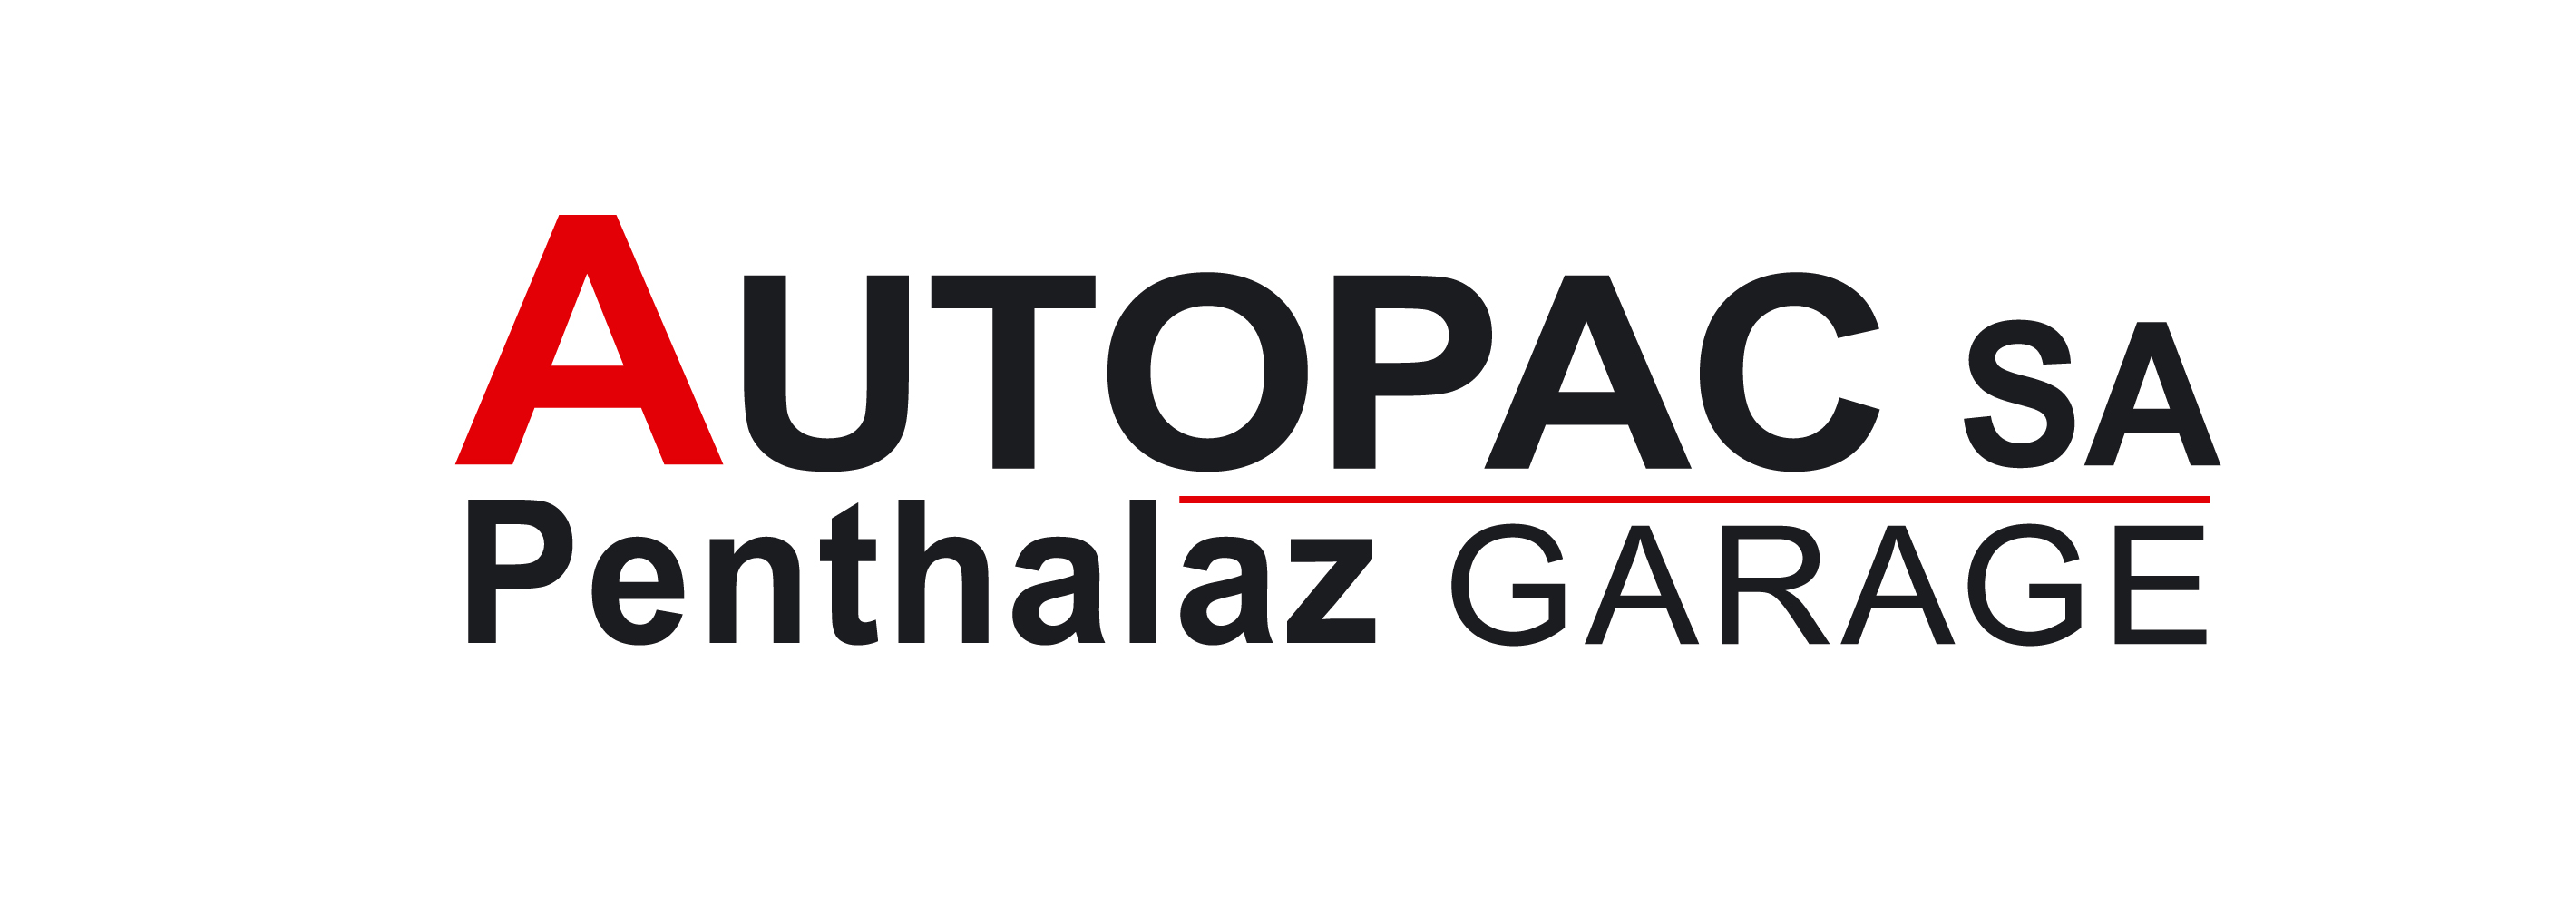 Garage Autopac SA, Penthalaz